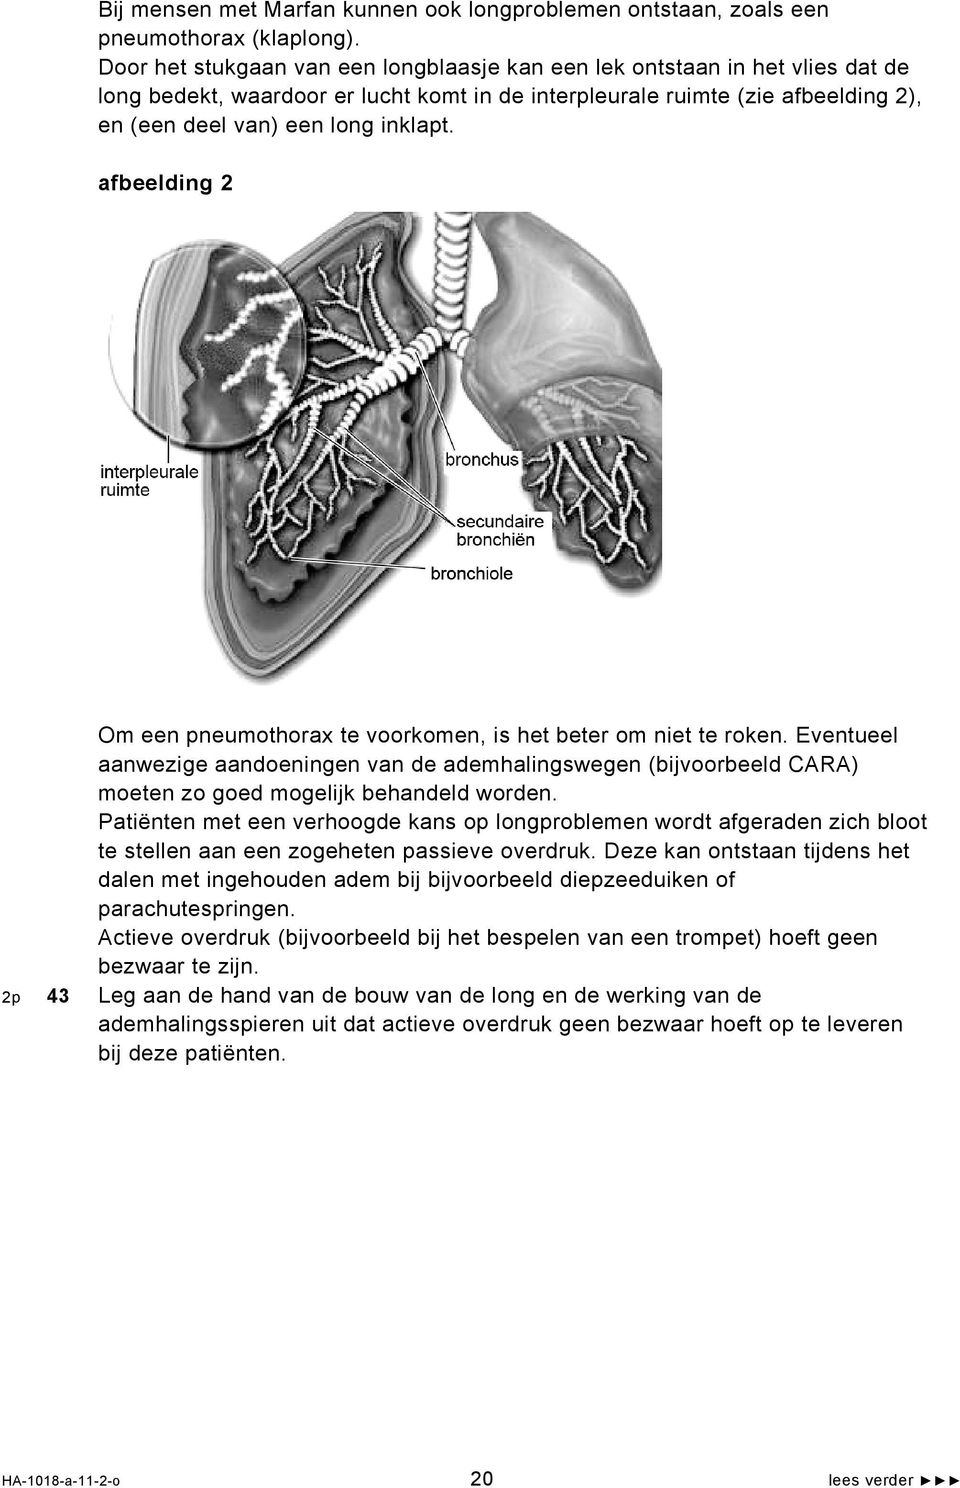 afbeelding 2 Om een pneumothorax te voorkomen, is het beter om niet te roken. Eventueel aanwezige aandoeningen van de ademhalingswegen (bijvoorbeeld CARA) moeten zo goed mogelijk behandeld worden.